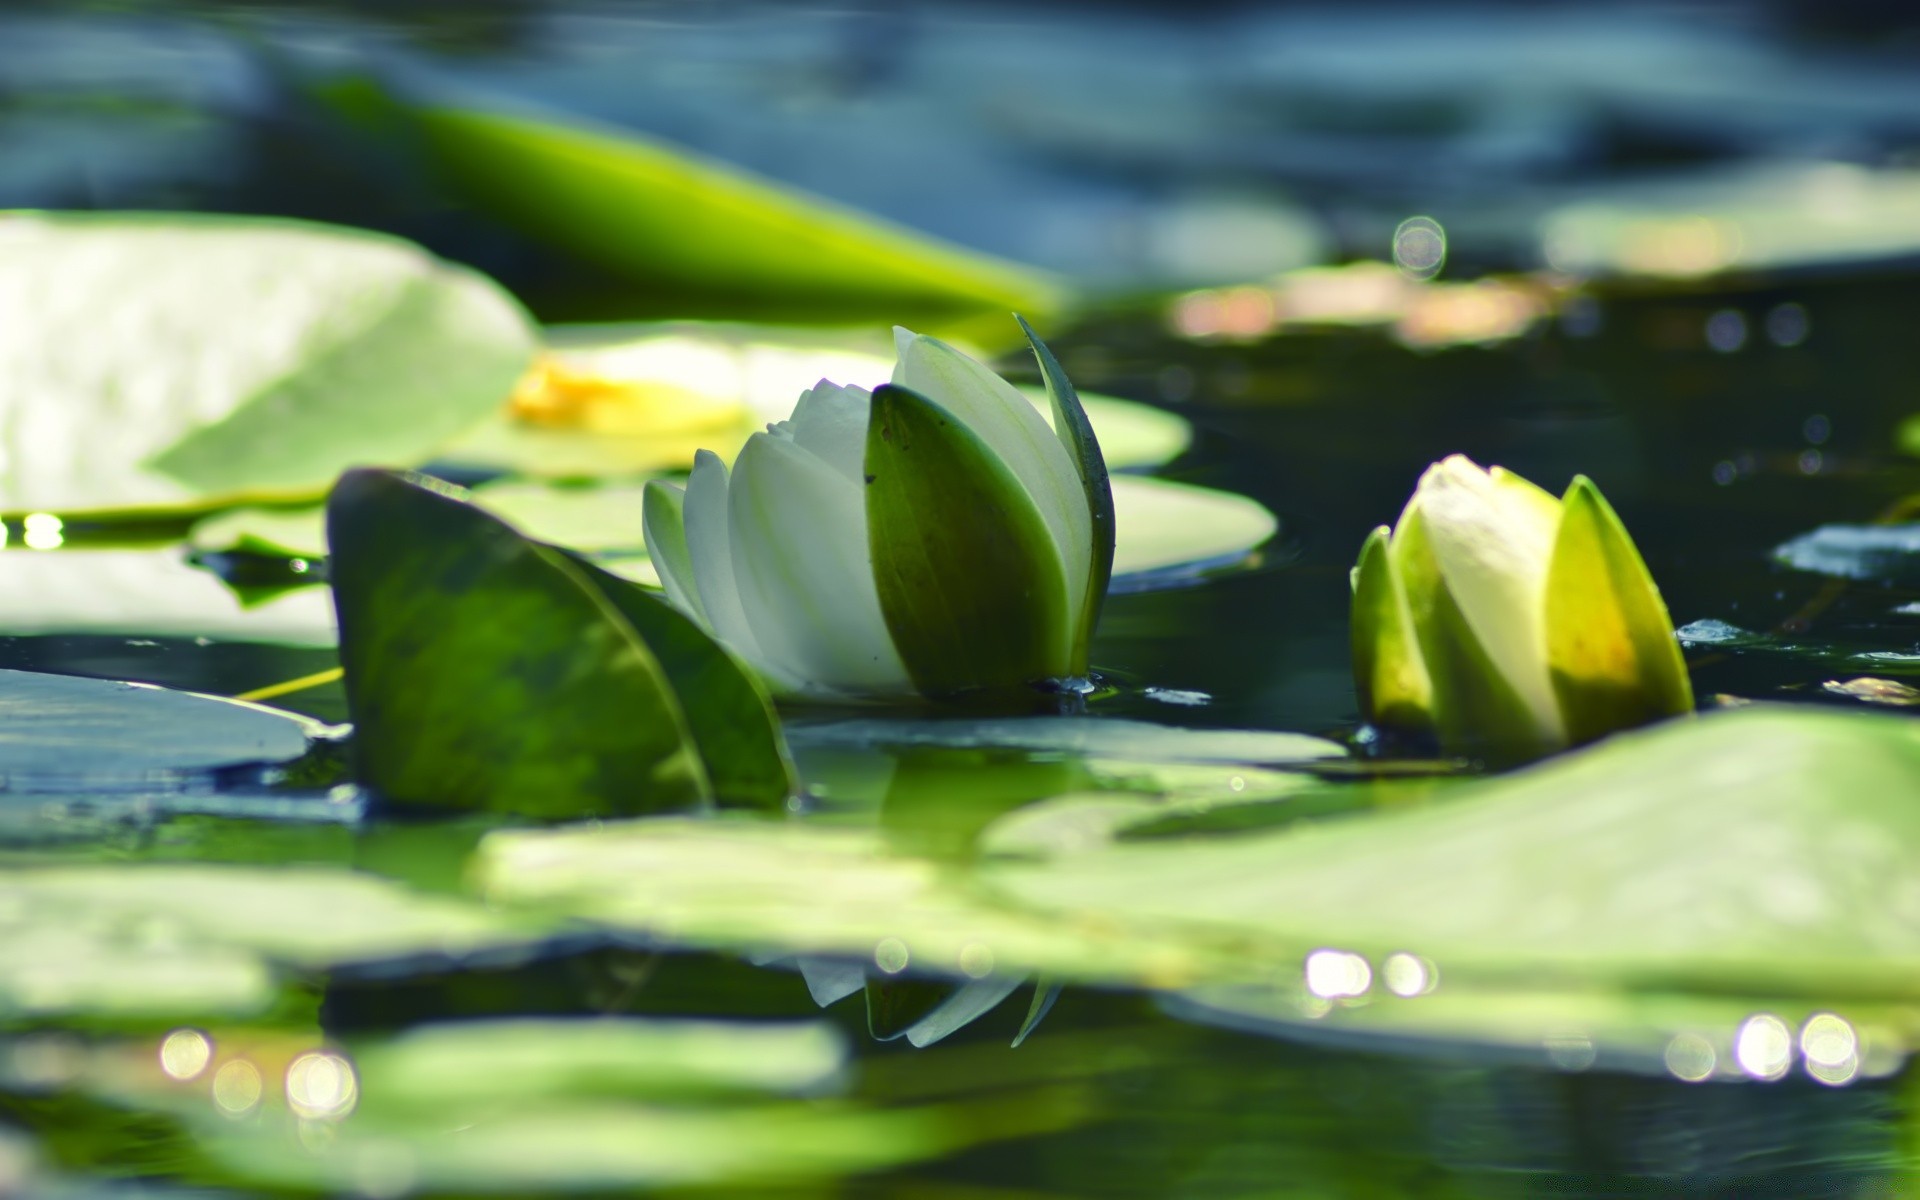 цветы лист цветок лотос дзен природа лили размытость бассейн сад свет чистота воды медитация крупным планом флора отражение